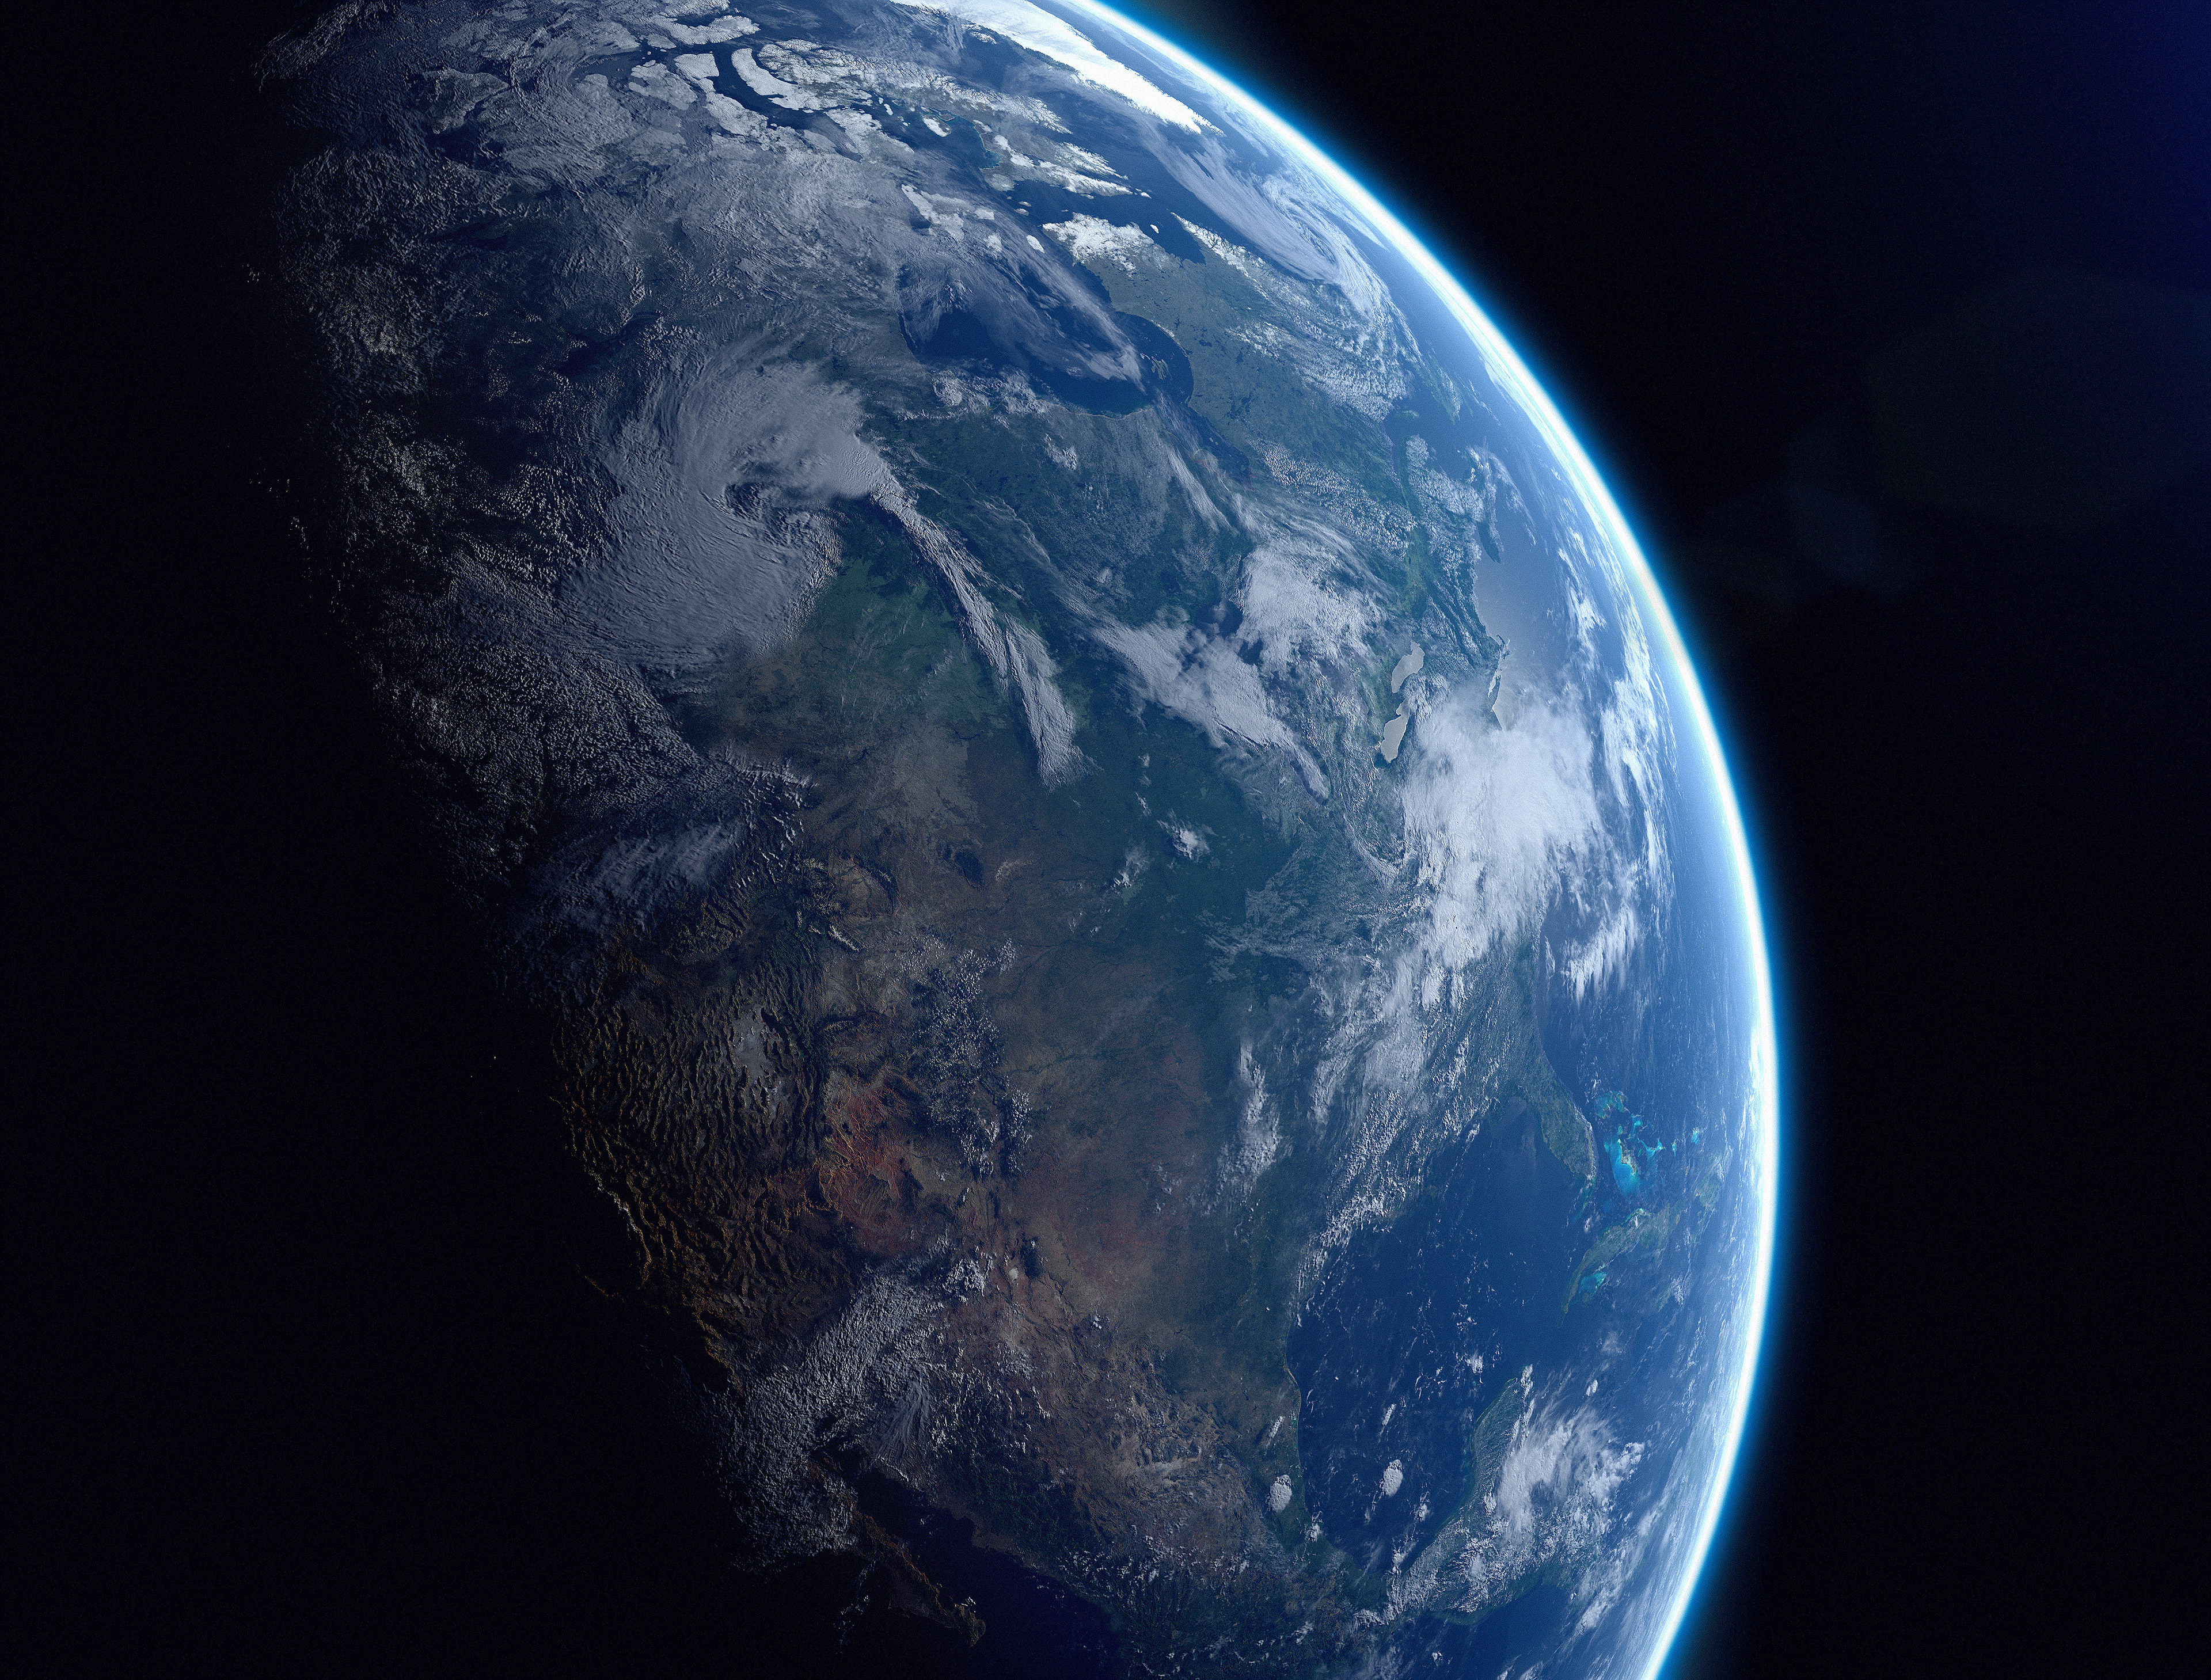 Картинка планета земля из космоса. Планета земля в космосе. О земле и космосе. Земля из космоса. Планета из космоса.